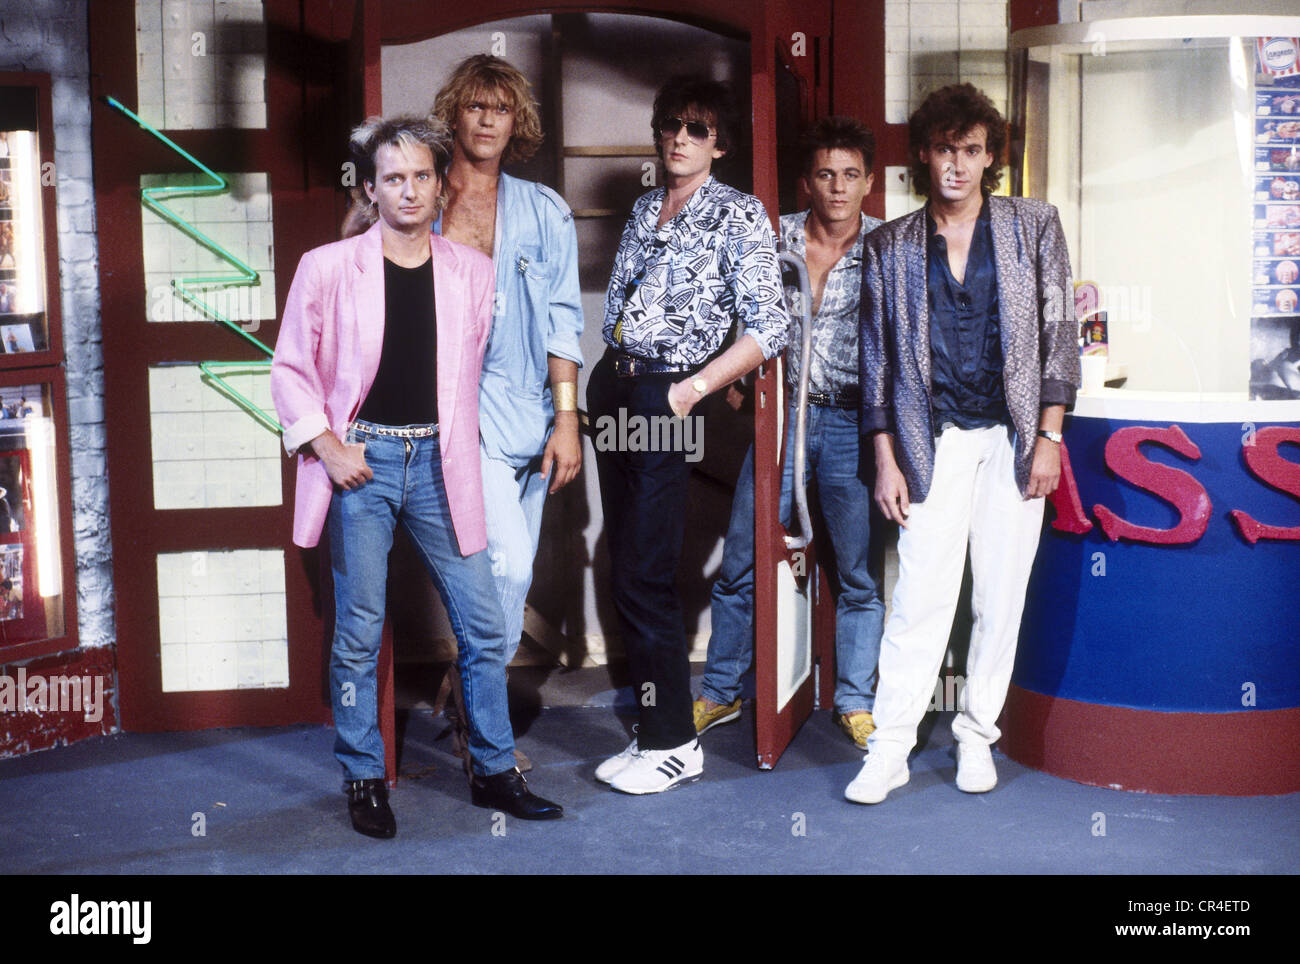 Münchener Freiheit, German band, founded 1981, Aron Strobel, Alex Grünwald, Rennie Hatzke, Micha Kunzi, Stefan Zauner, group picture, 1980s, Stock Photo